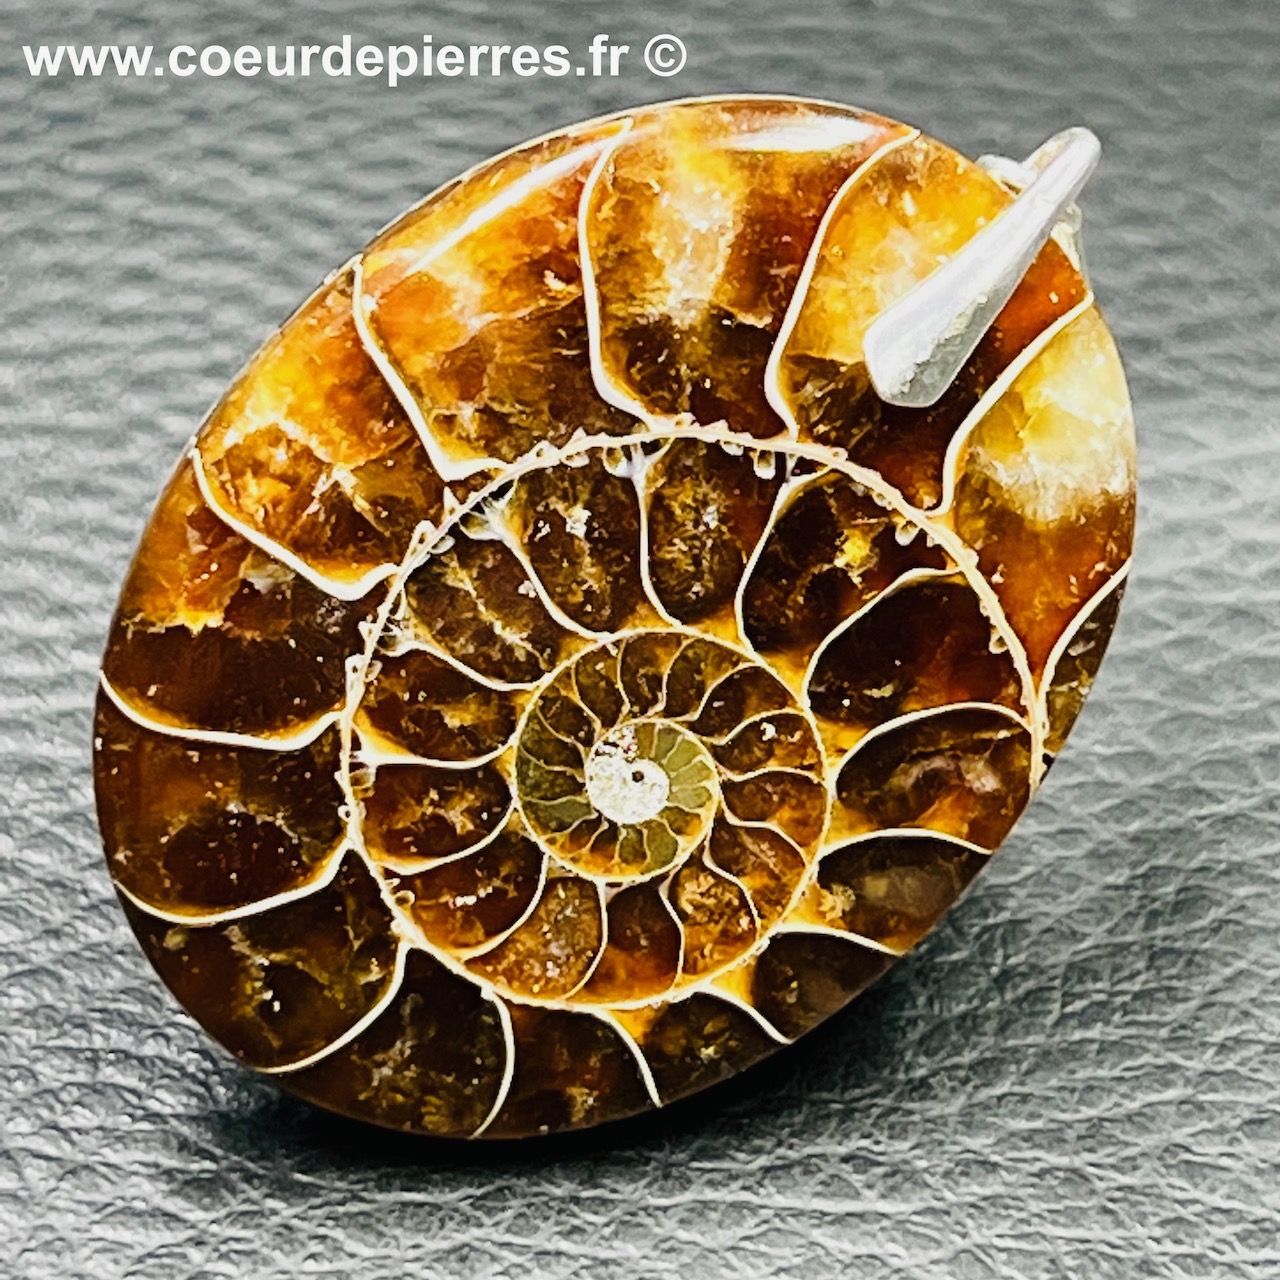 Pendentif ammonite de Madagascar (réf pam5)